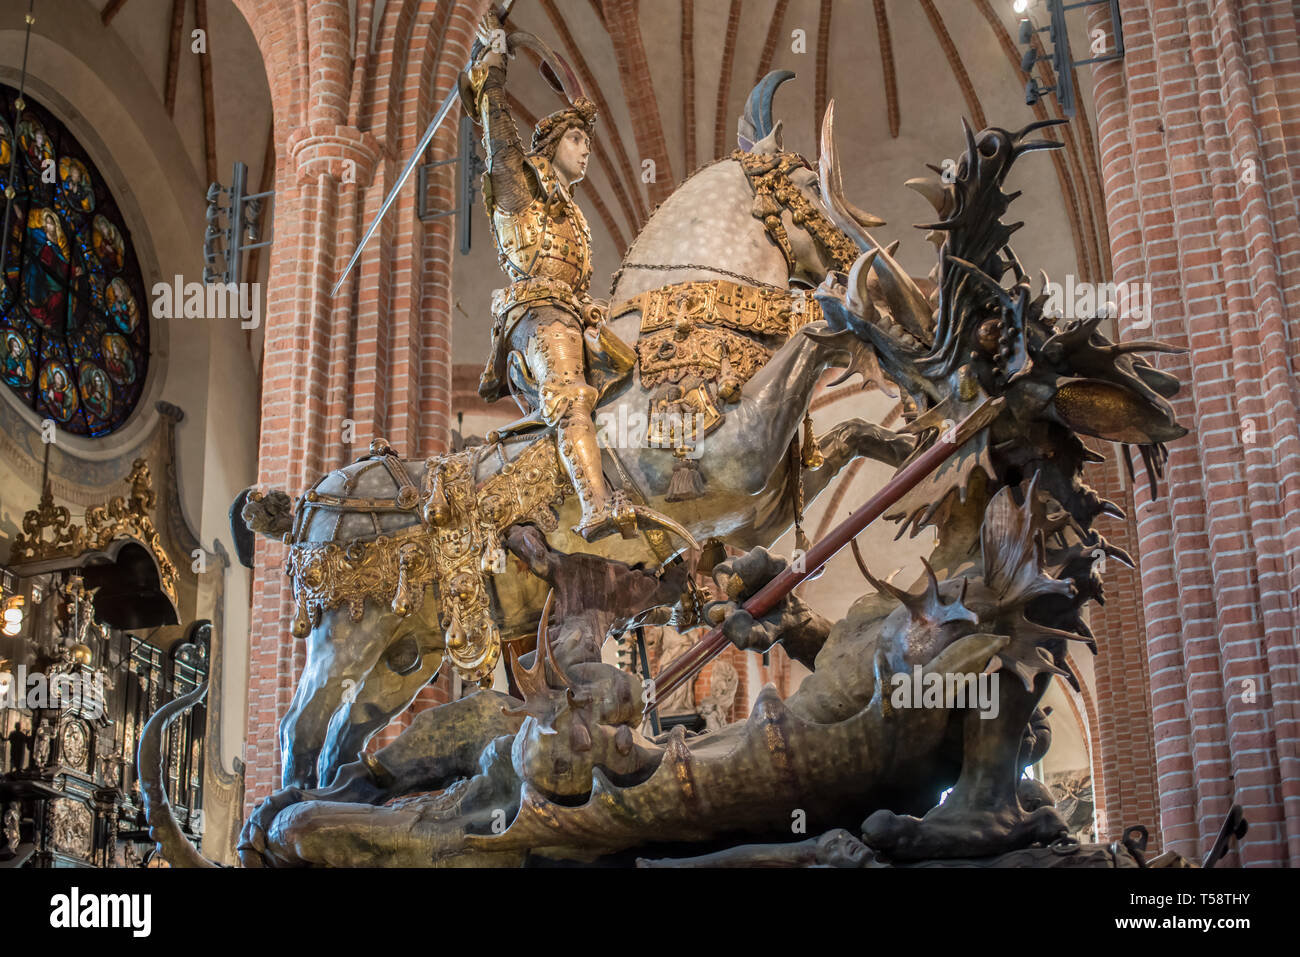 Bernt Notke medieval tardía de la escultura de madera representando la leyenda de San Jorge y el Dragón, ubicado en Storkyrkan en Estocolmo Foto de stock